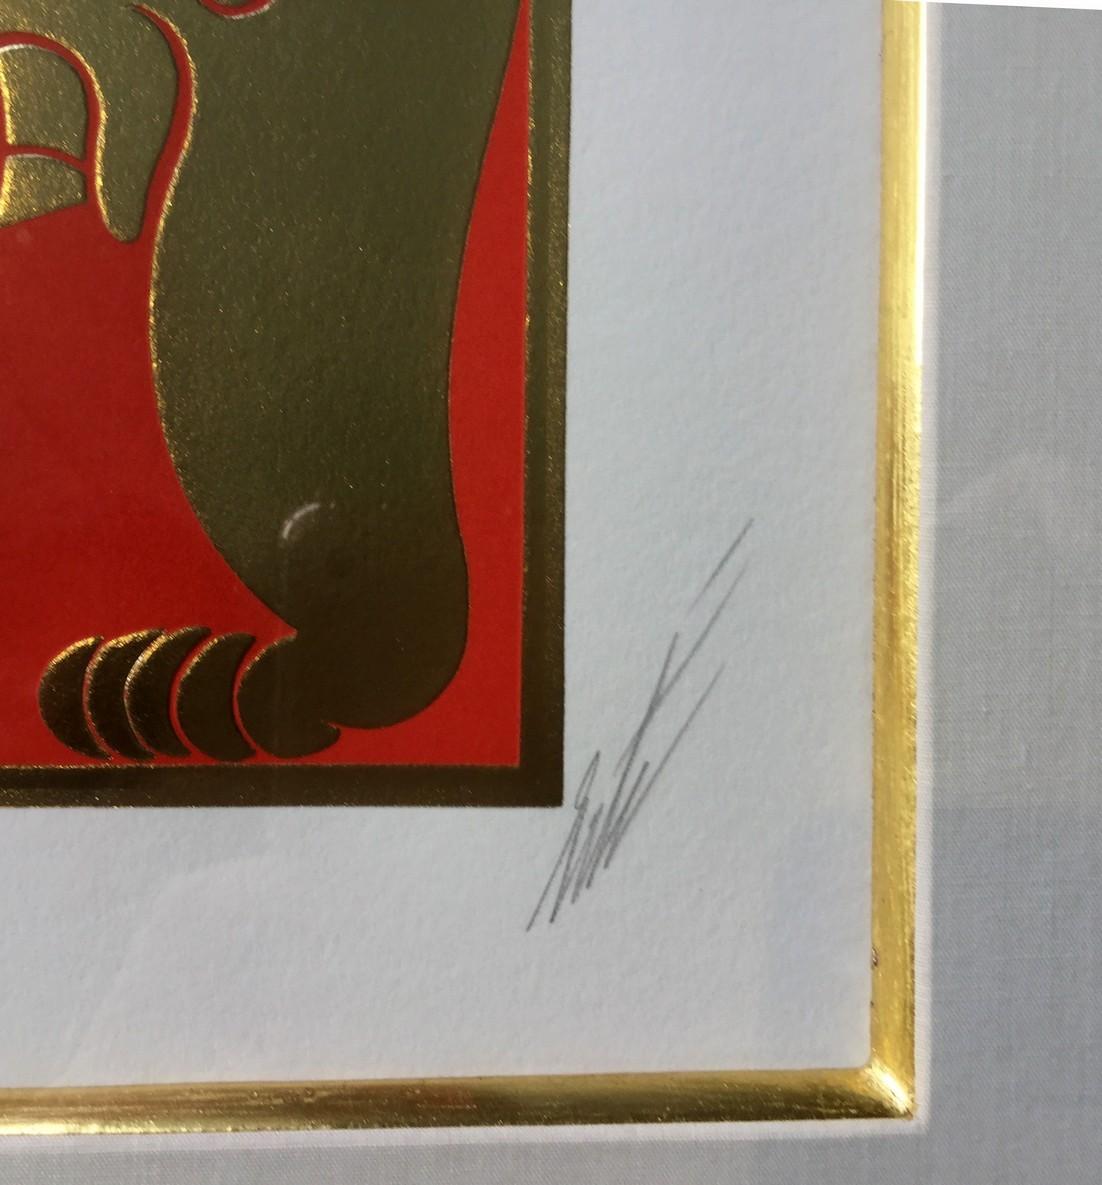 Late 20th Century Modern Framed Serigraph Samson & Delilah Signed Erte 1980s w Gold Leaf Embossed